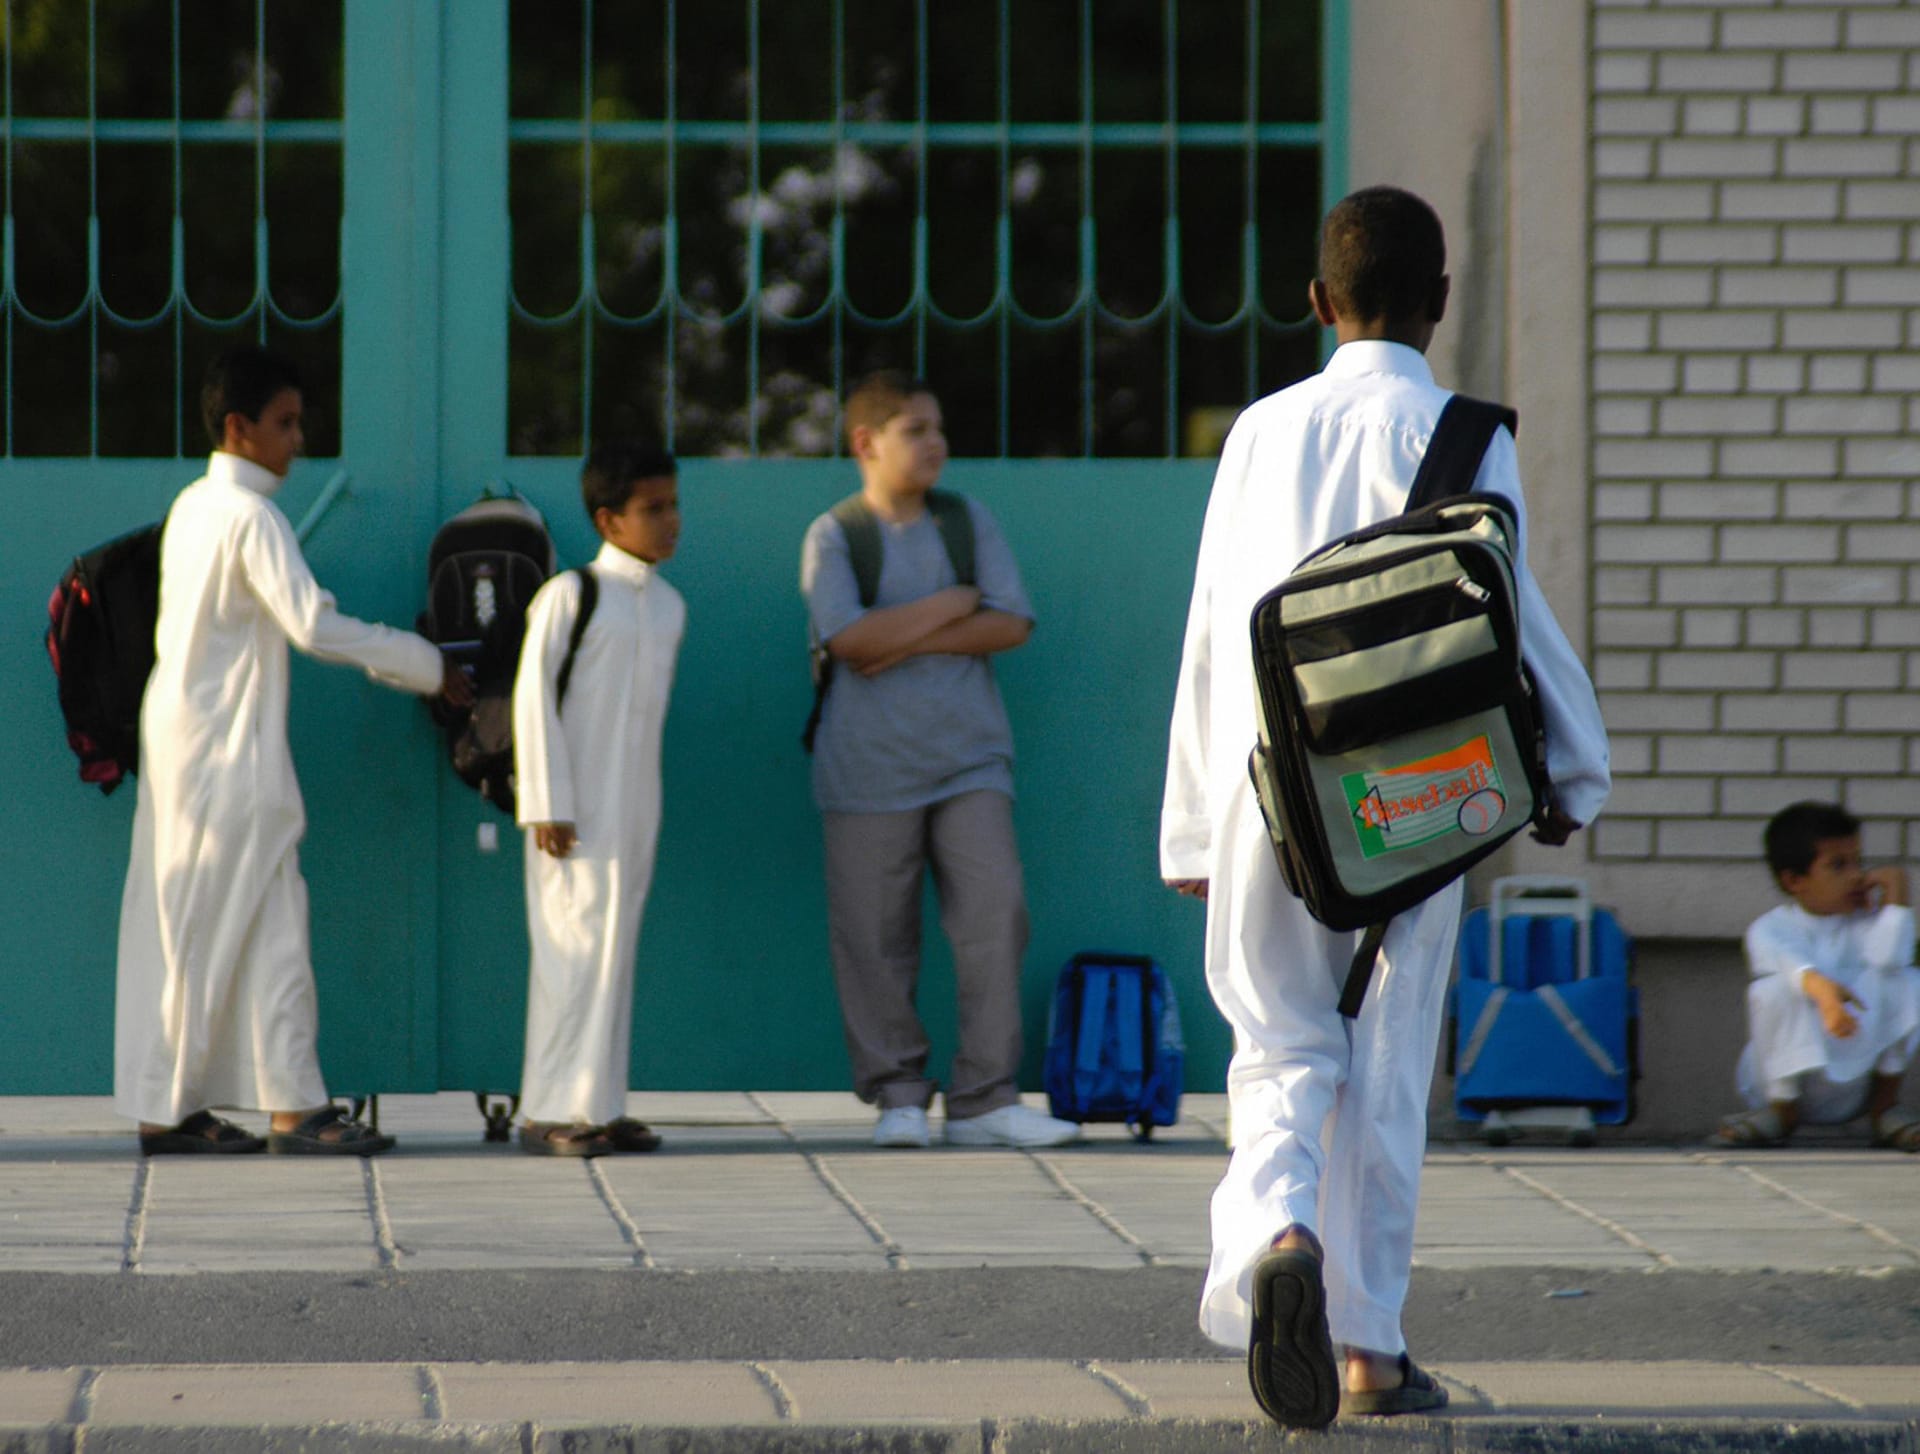 السعودية.. معلم مدرسة يفاجئ طلابه بهدية قيمتها تتجاوز 10 آلاف دولار بآخر يوم قبل التقاعد